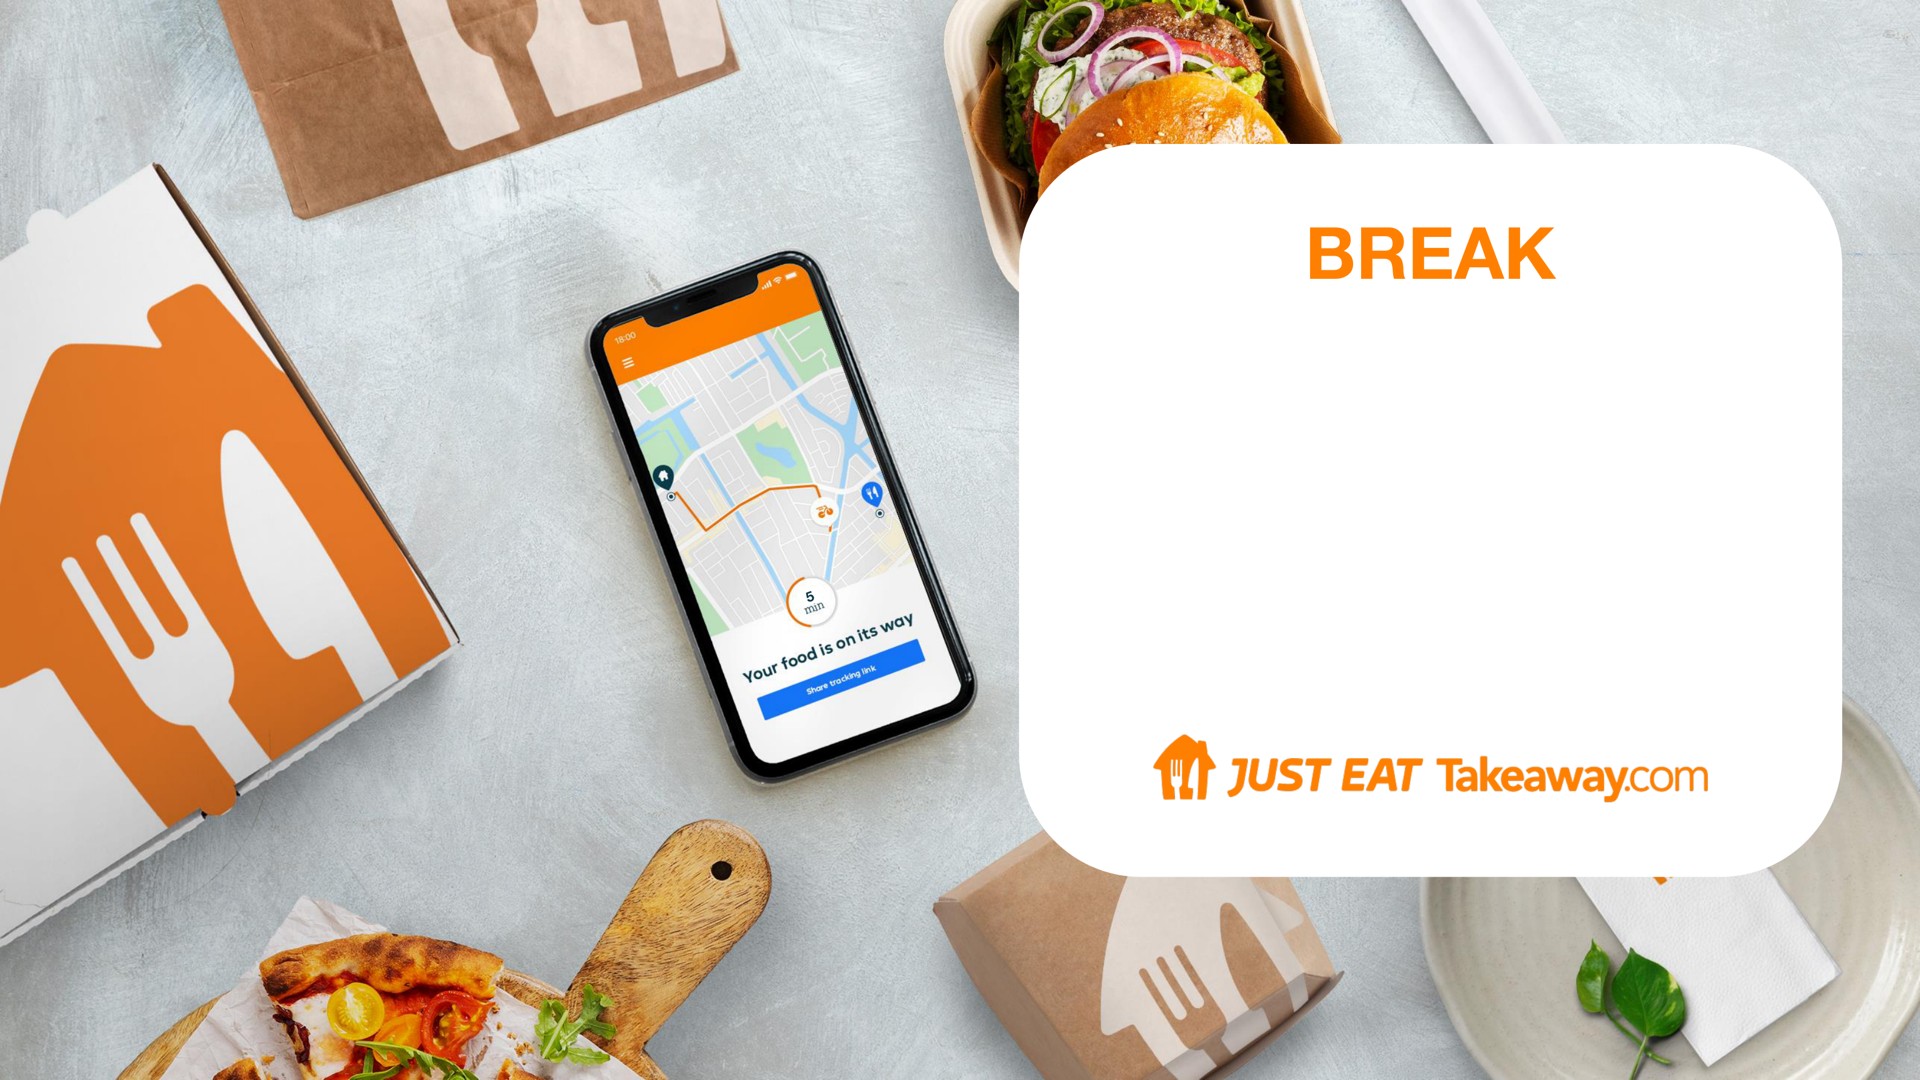 break | Just Eat Takeaway.com